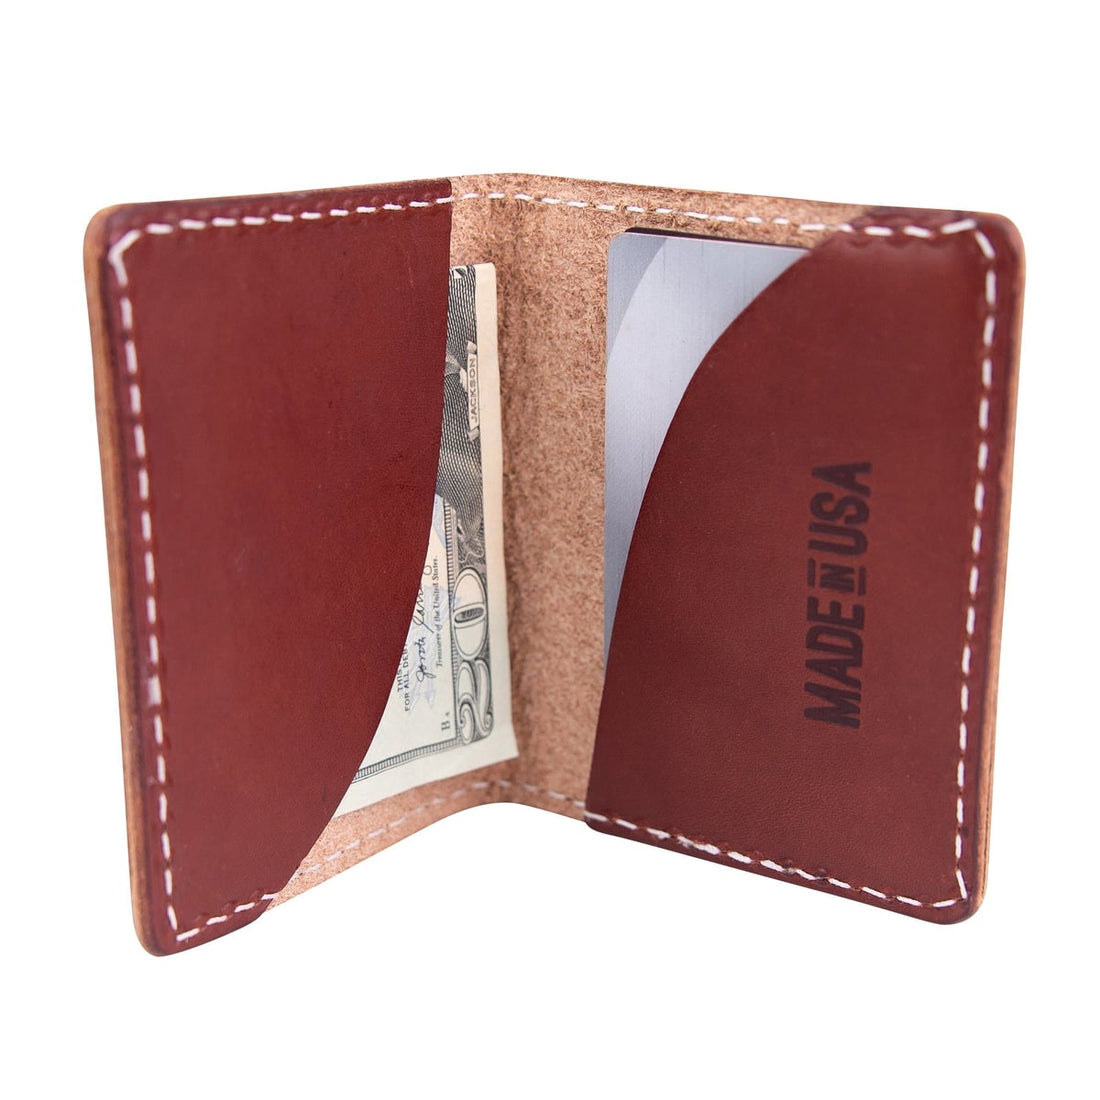 Made in the USA Spotlight: Slimline Front Pocket Wallet